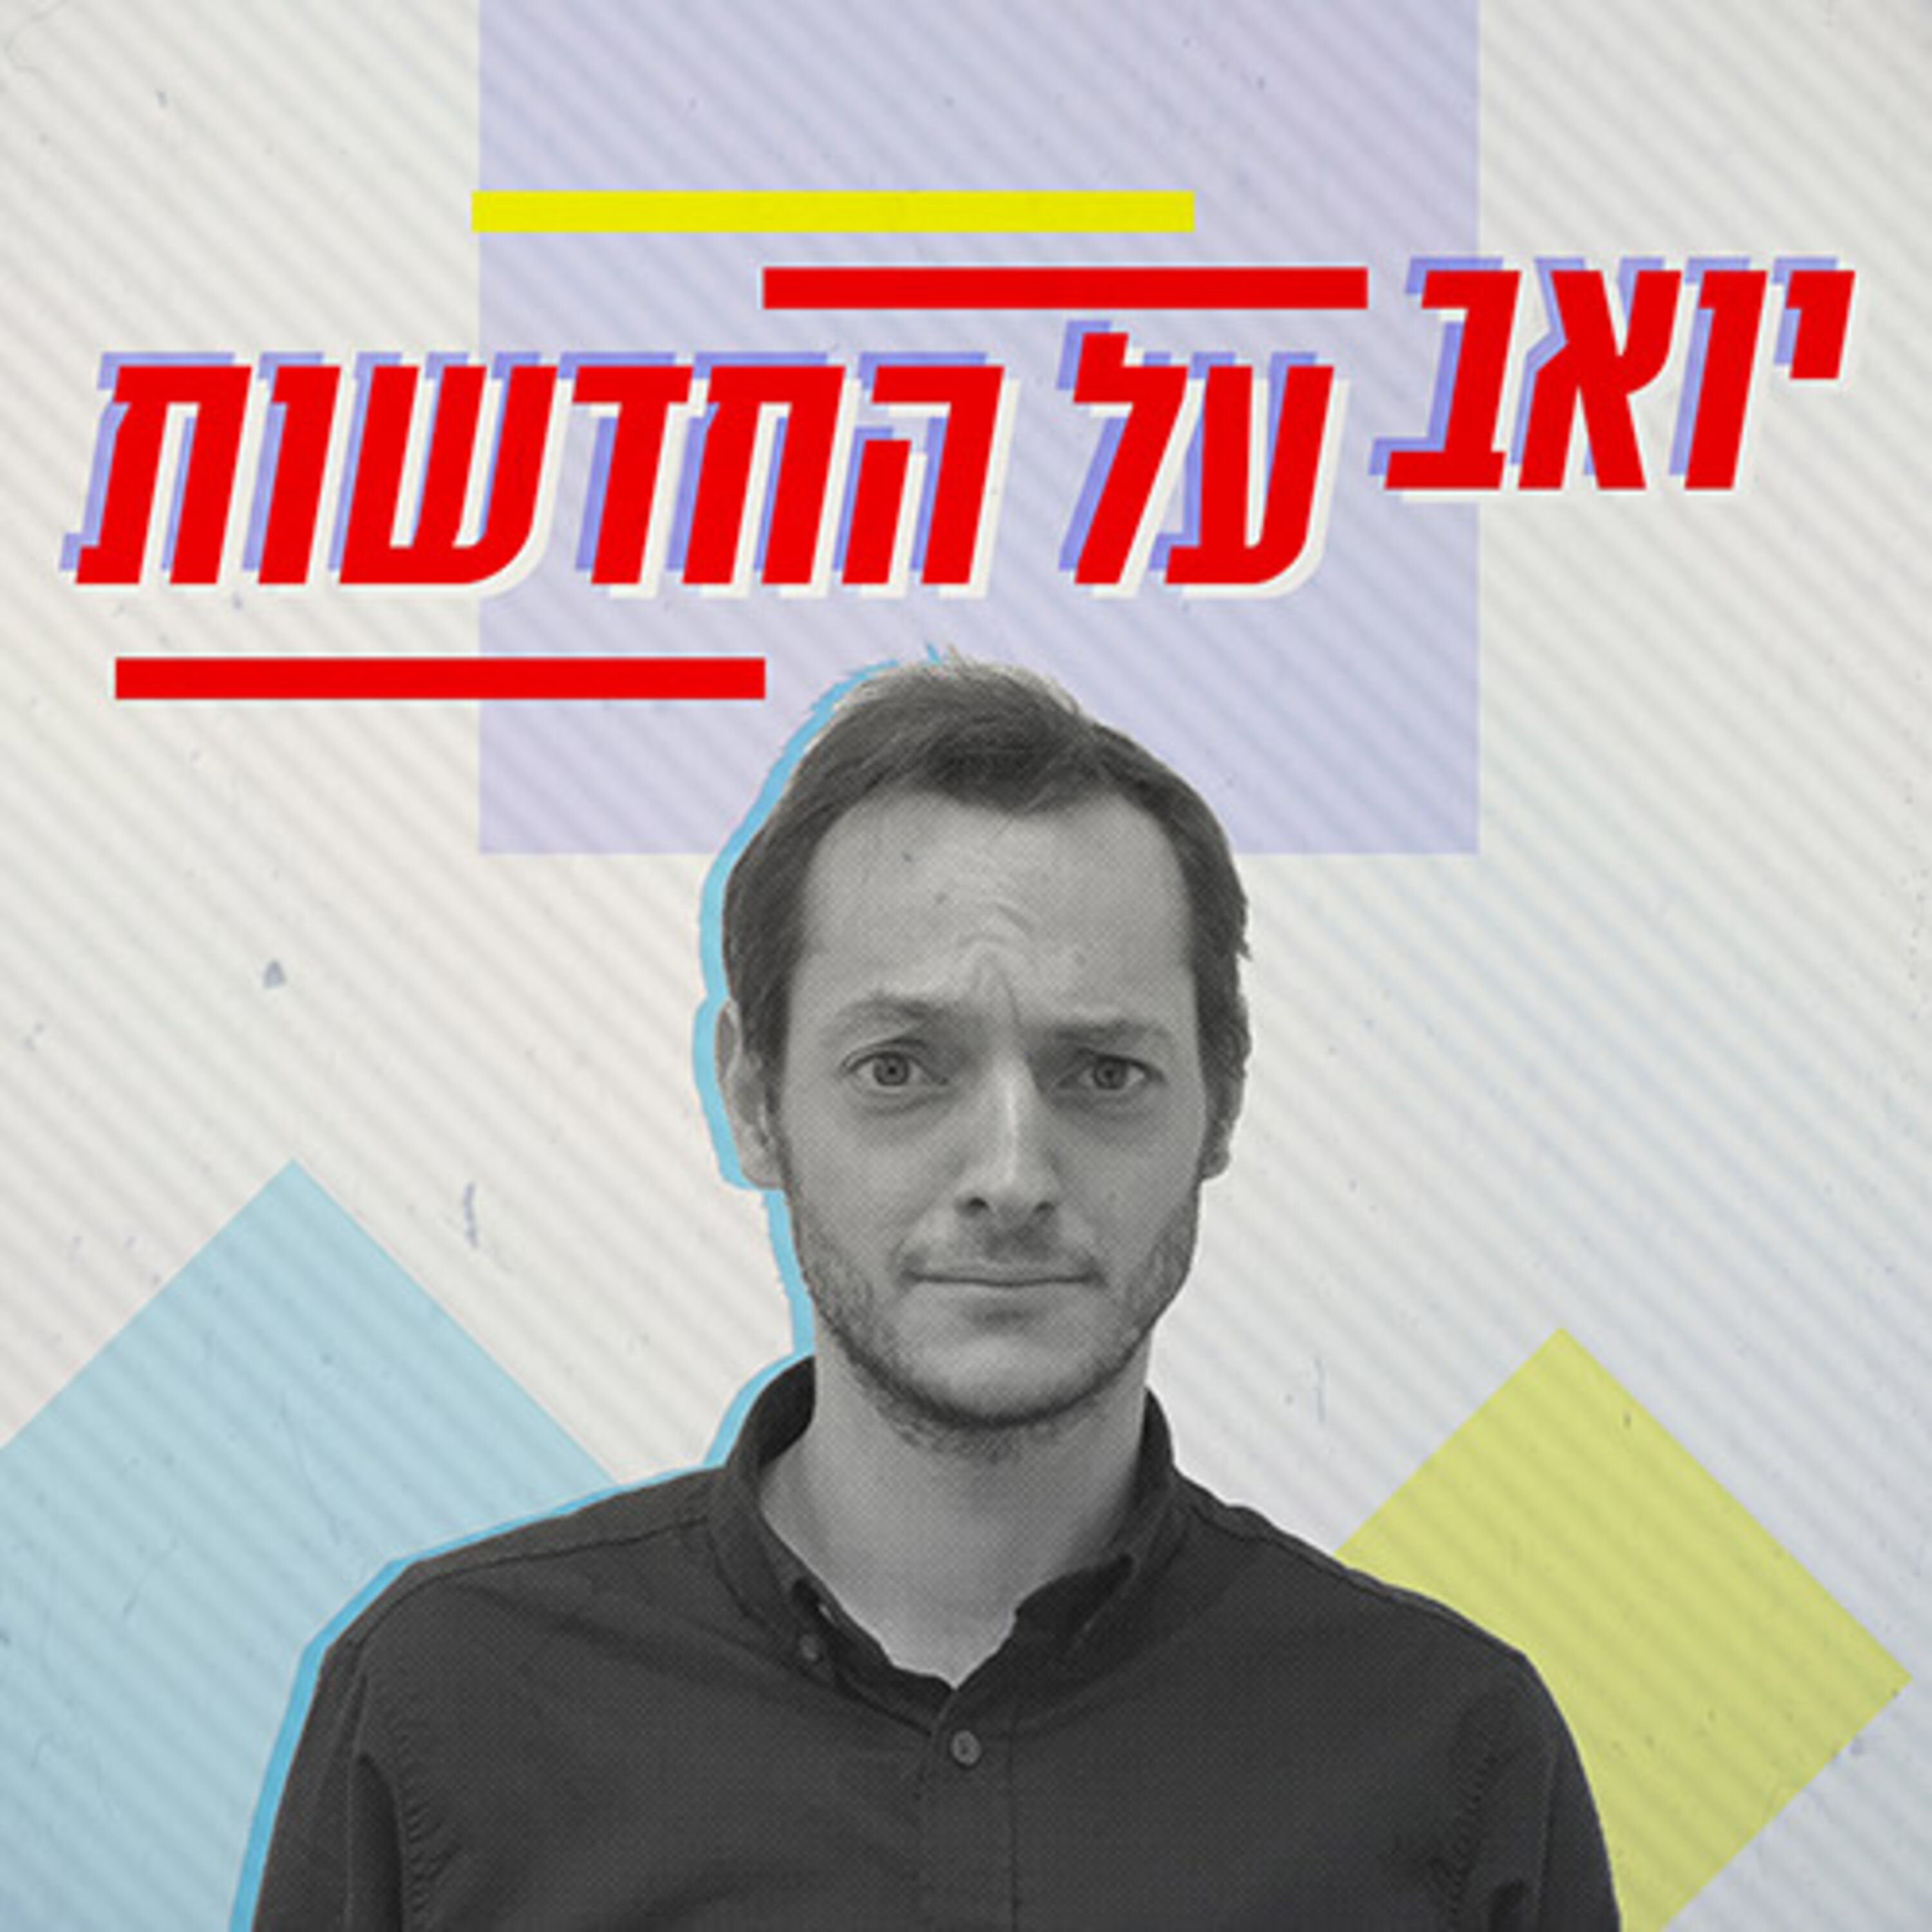 יואב על החדשות Yoav on the news